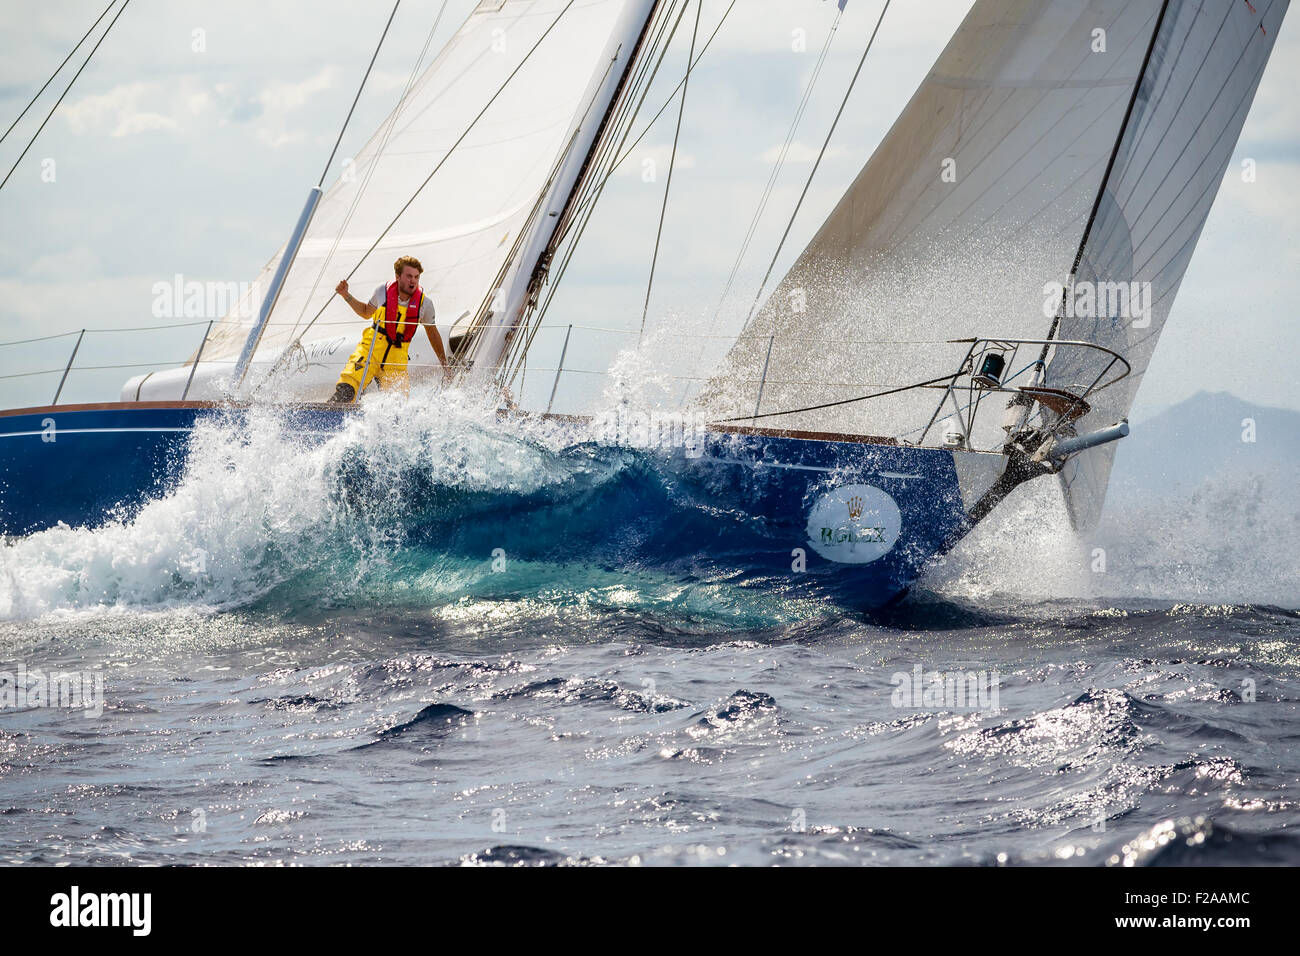 Maxi Yacht Rolex Cup 2015 barca vela regata. Foto Stock